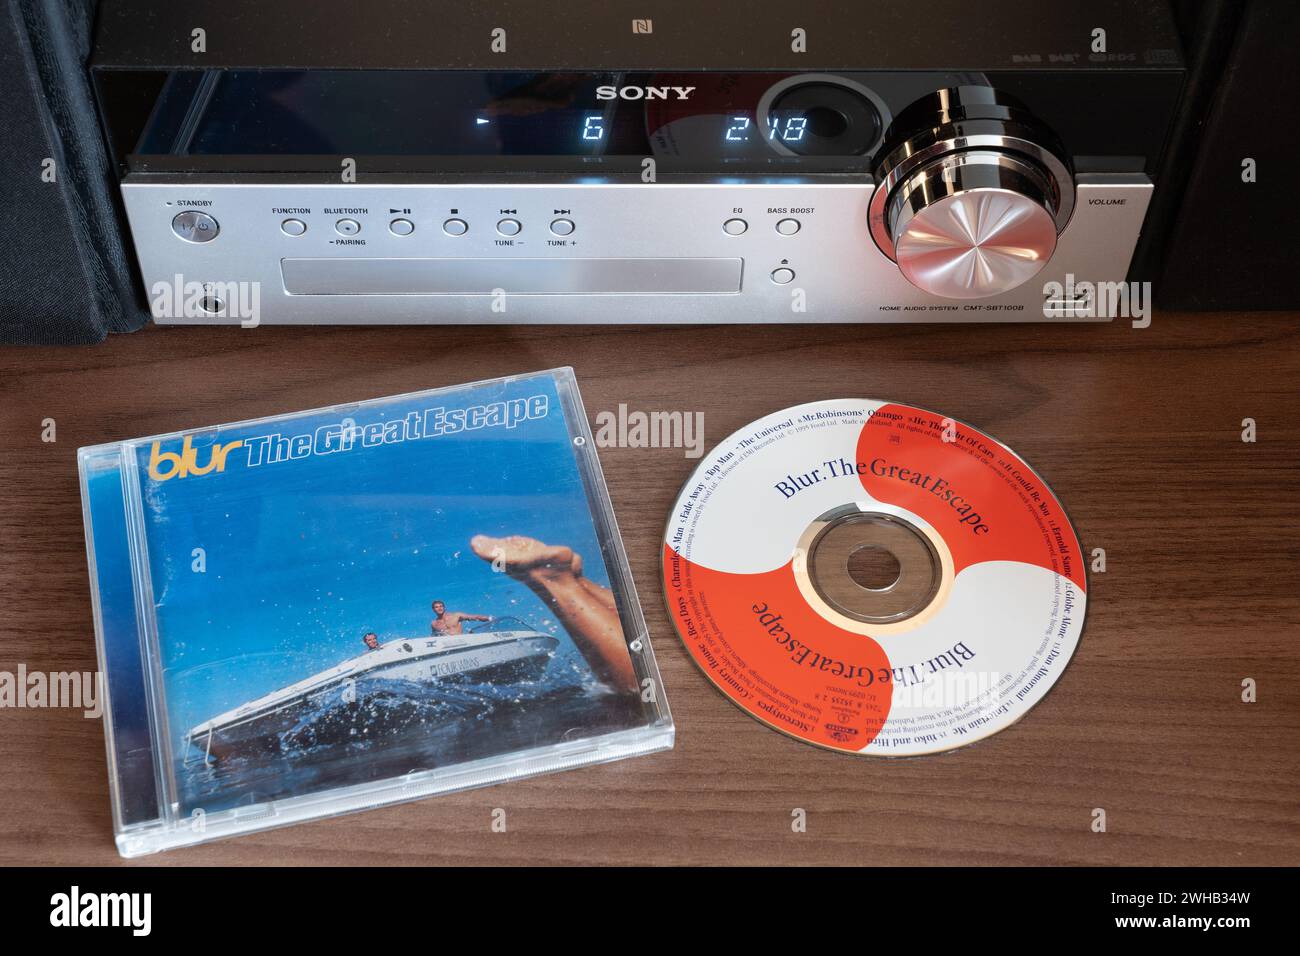 The Great Escape Albums de Blur The Great Escape The Great Escape est le quatrième album studio du groupe de rock anglais Blur. L'album atteint la première place du UK Albums Chart. Album CD vu ici Banque D'Images